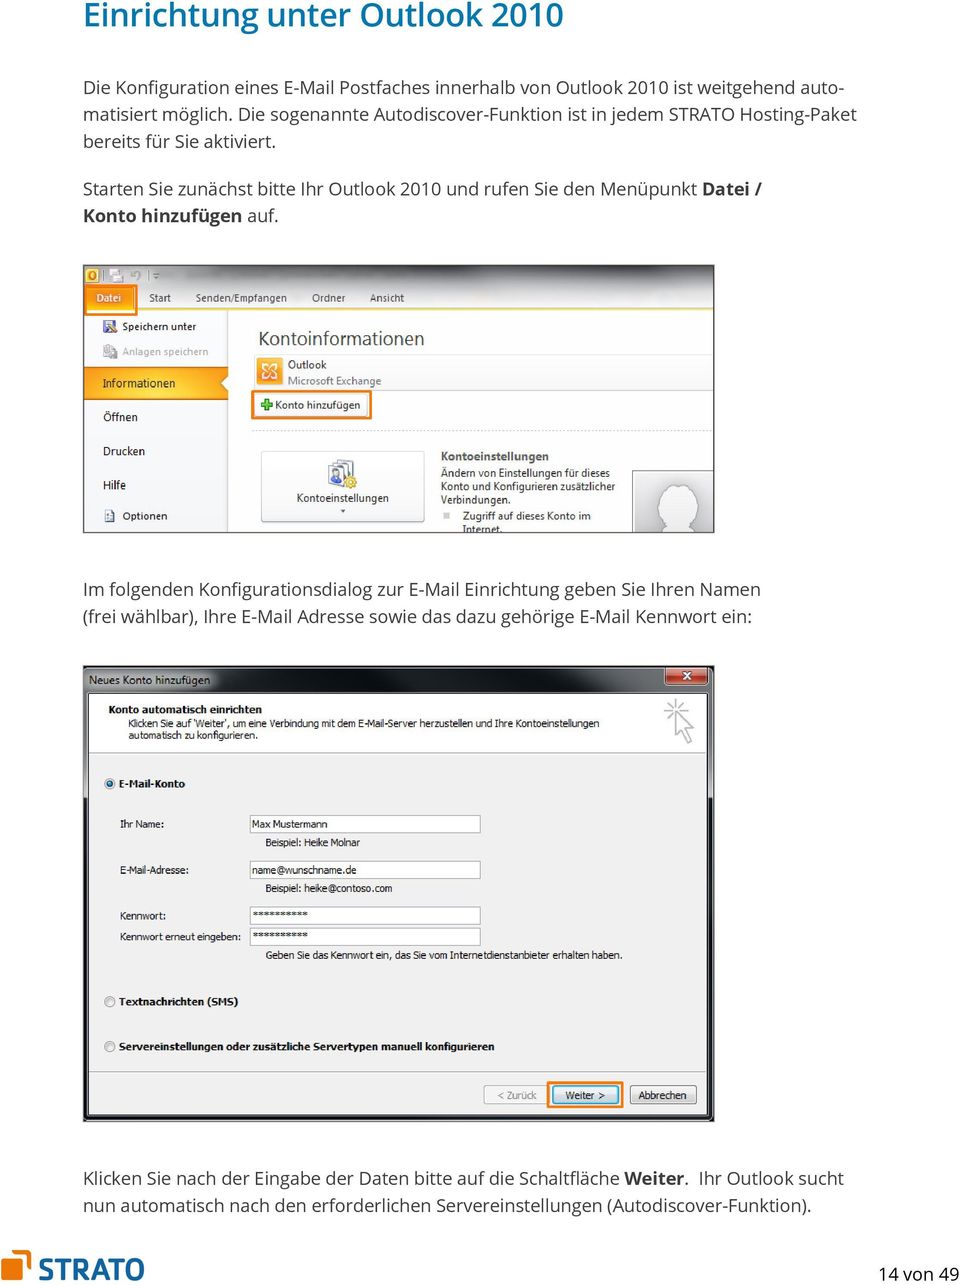 Starten Sie zunächst bitte Ihr Outlook 2010 und rufen Sie den Menüpunkt Datei / Konto hinzufügen auf.